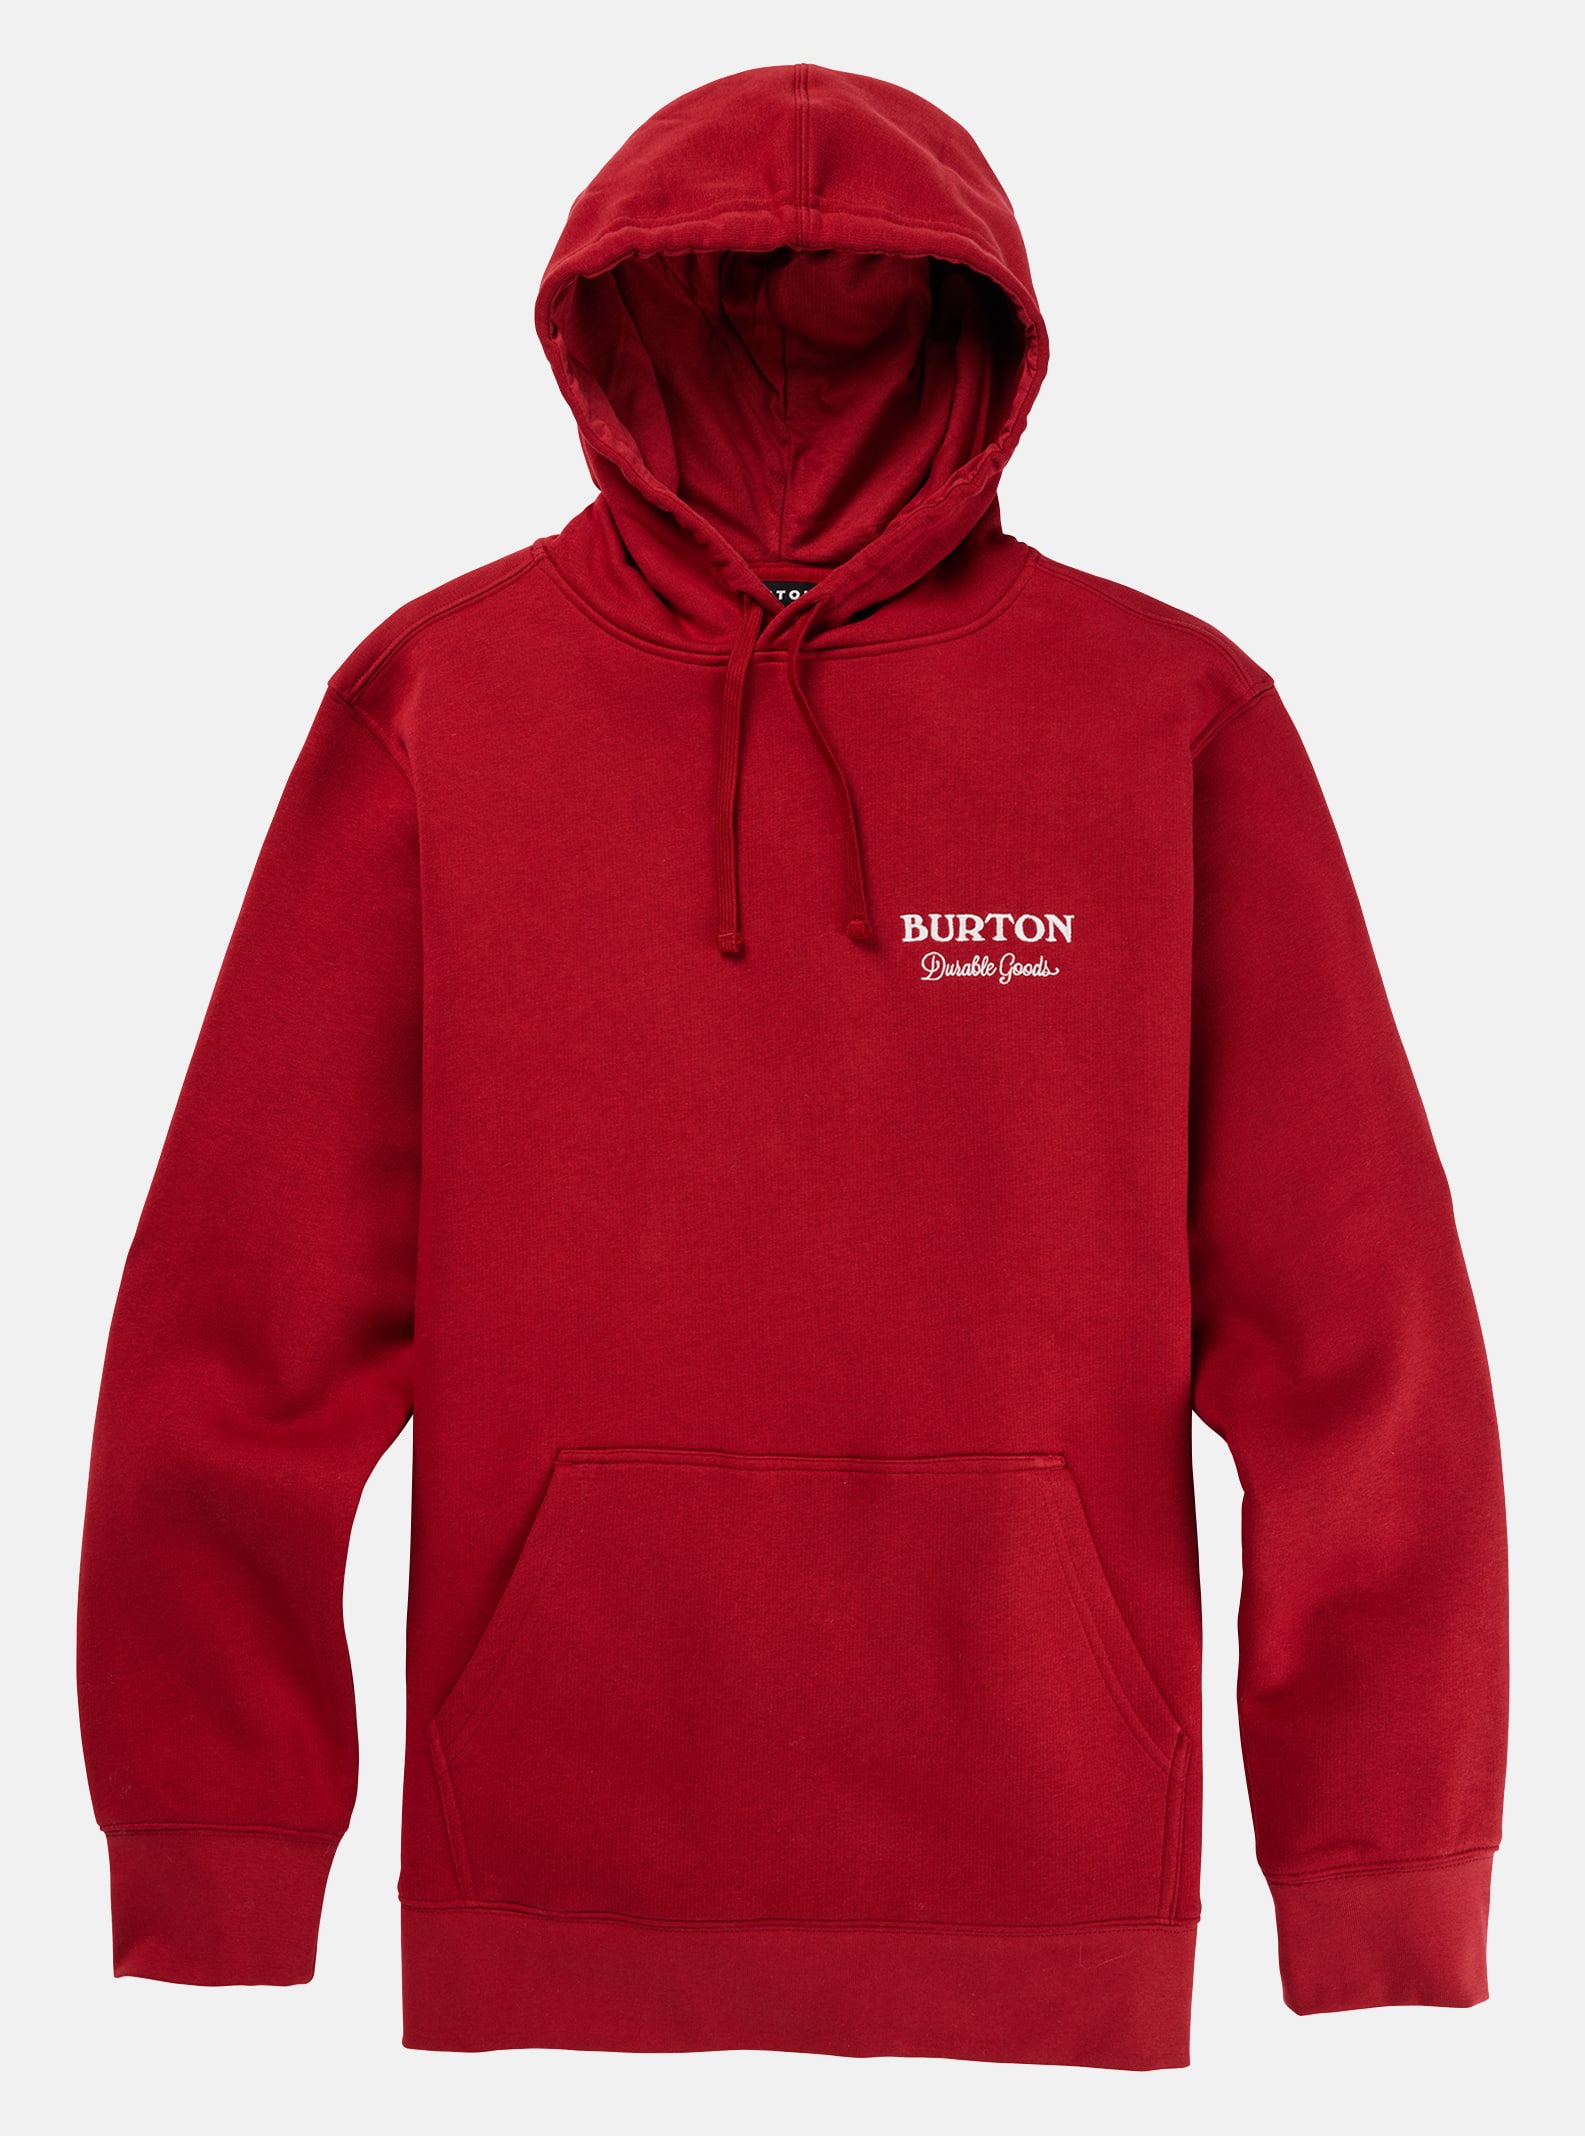 Durable Goods Pullover Hoodie Sweatshirt | Burton.com Winter 2023 CA